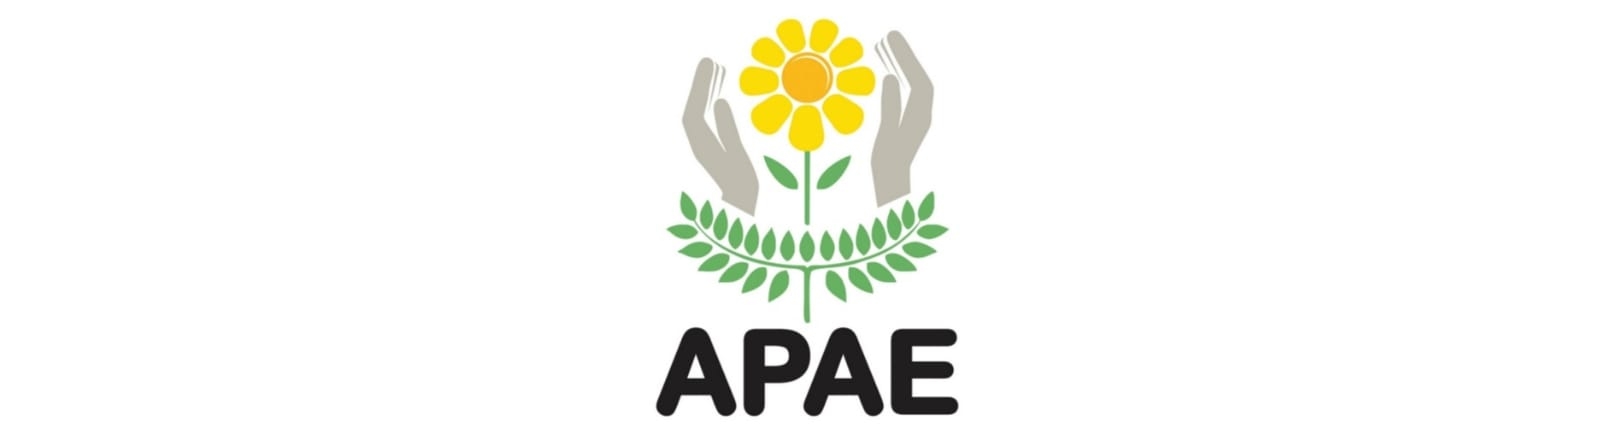 APAE - Peqaueno Lar